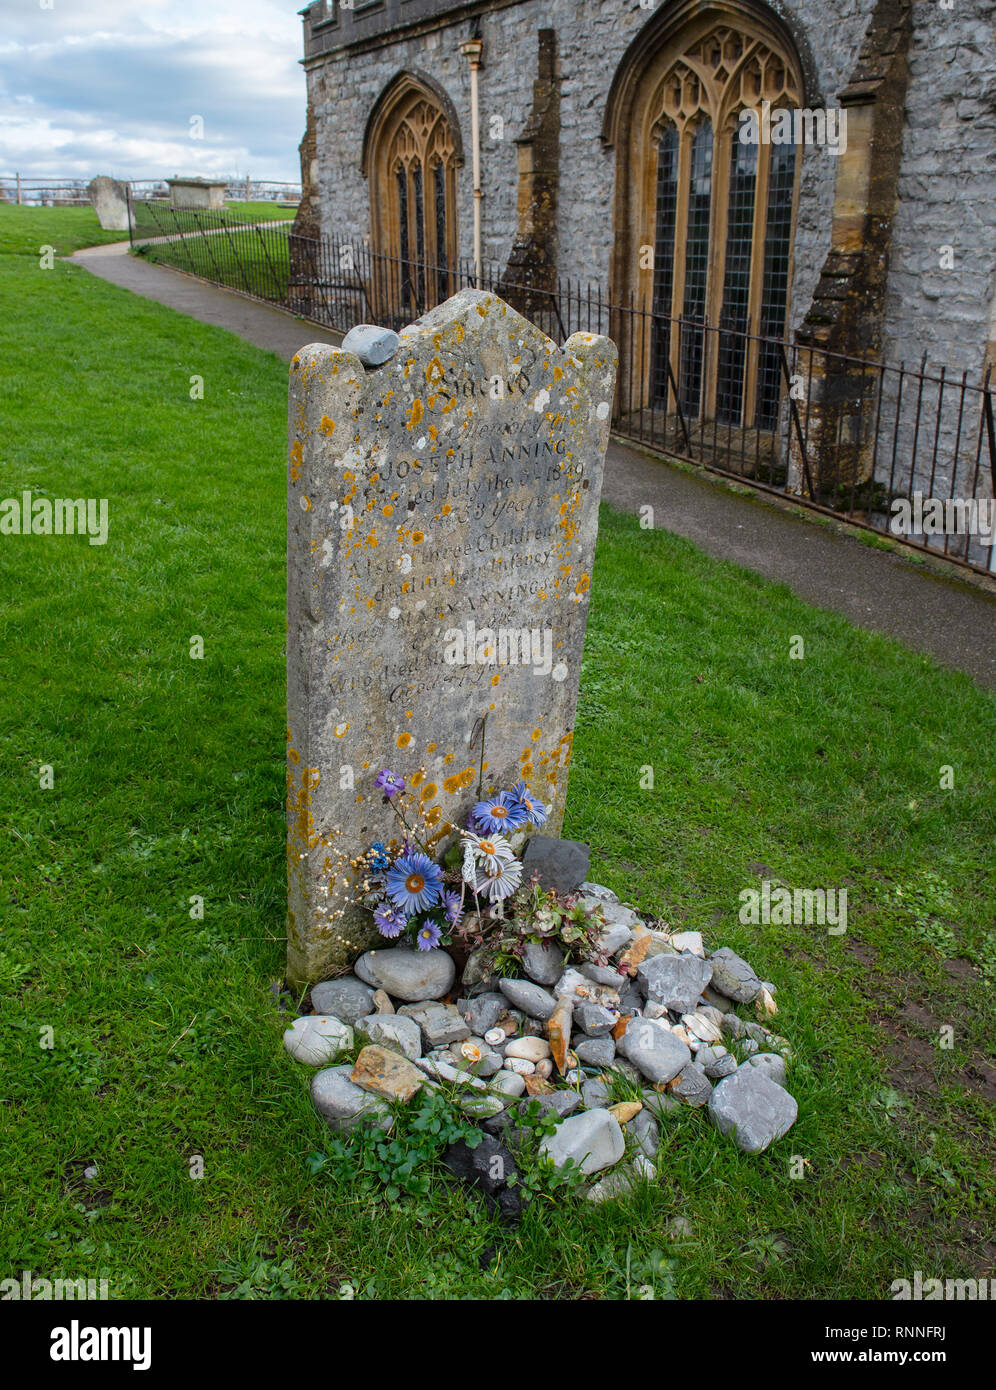 L'originale pietra tombale di Mary Anning prima che è stata sostituita nel 2019. Visitatori come per posizionare i fossili sulla tomba invece di fiori in sua memoria. Foto Stock